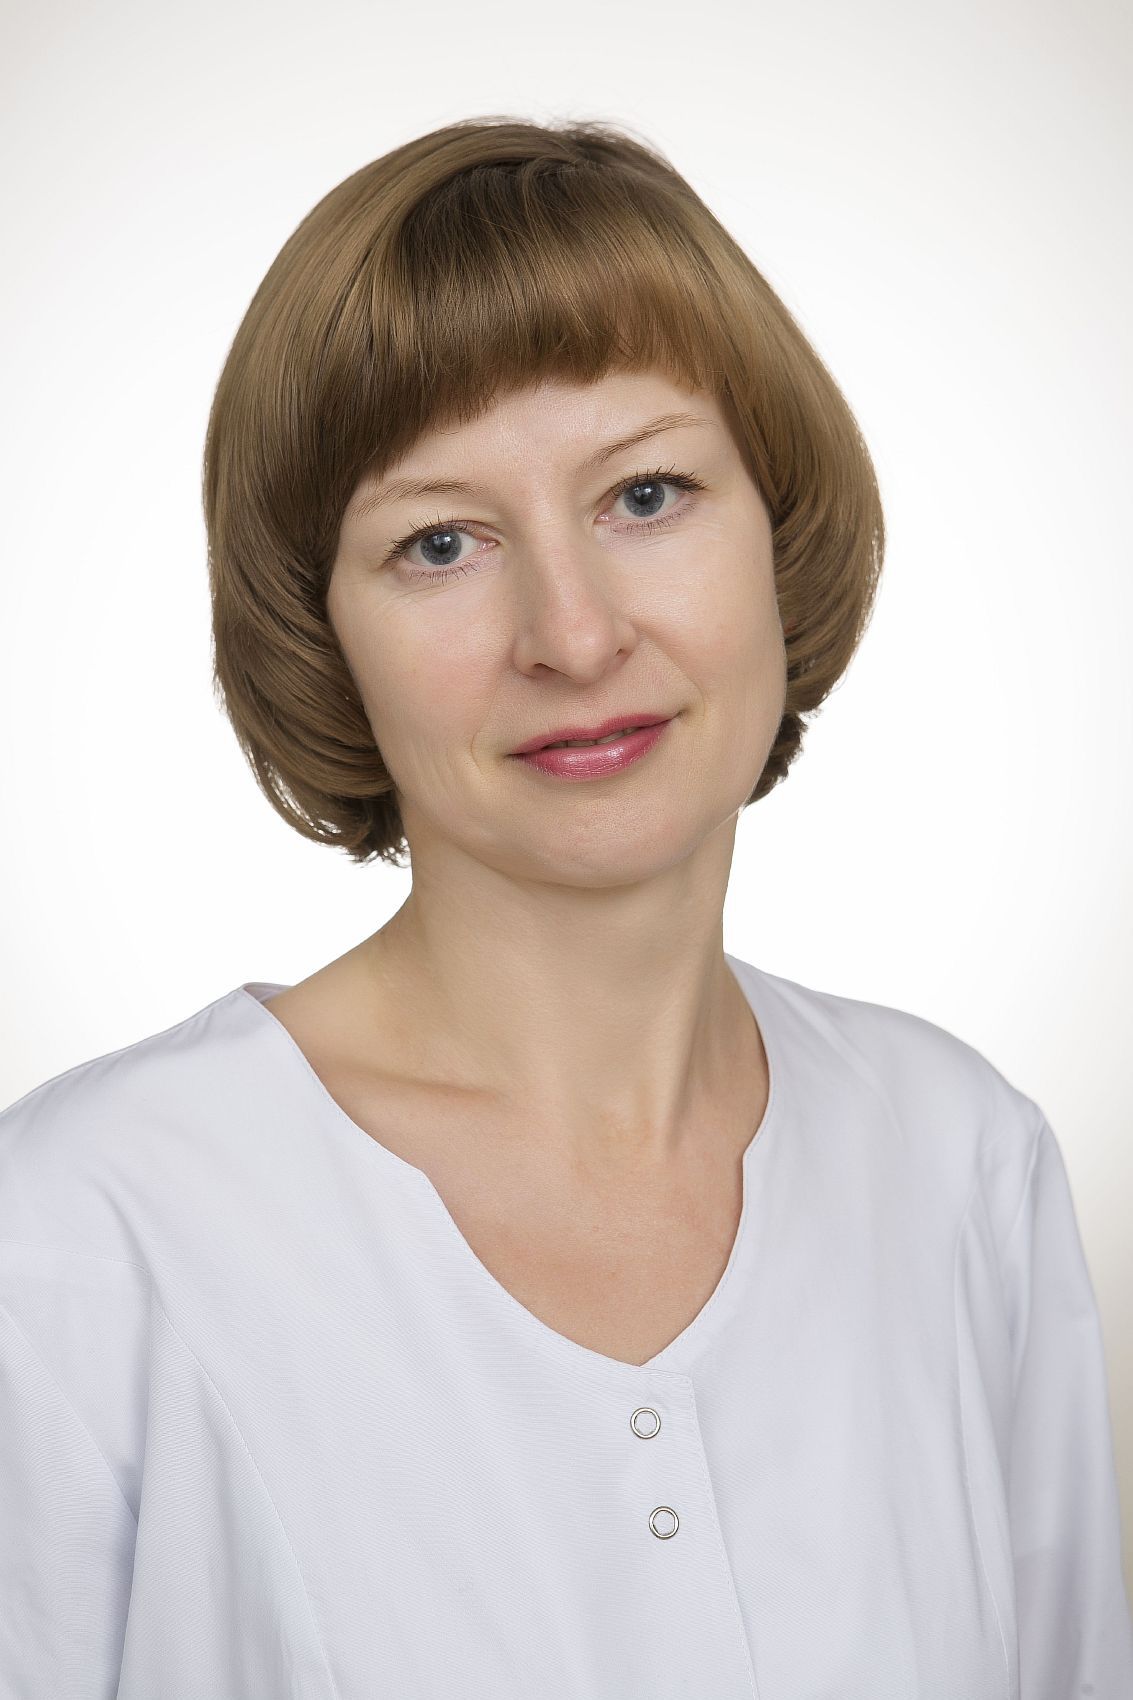 врач-гастроэнтеролог первой категории Лаврова Ирина Александровна